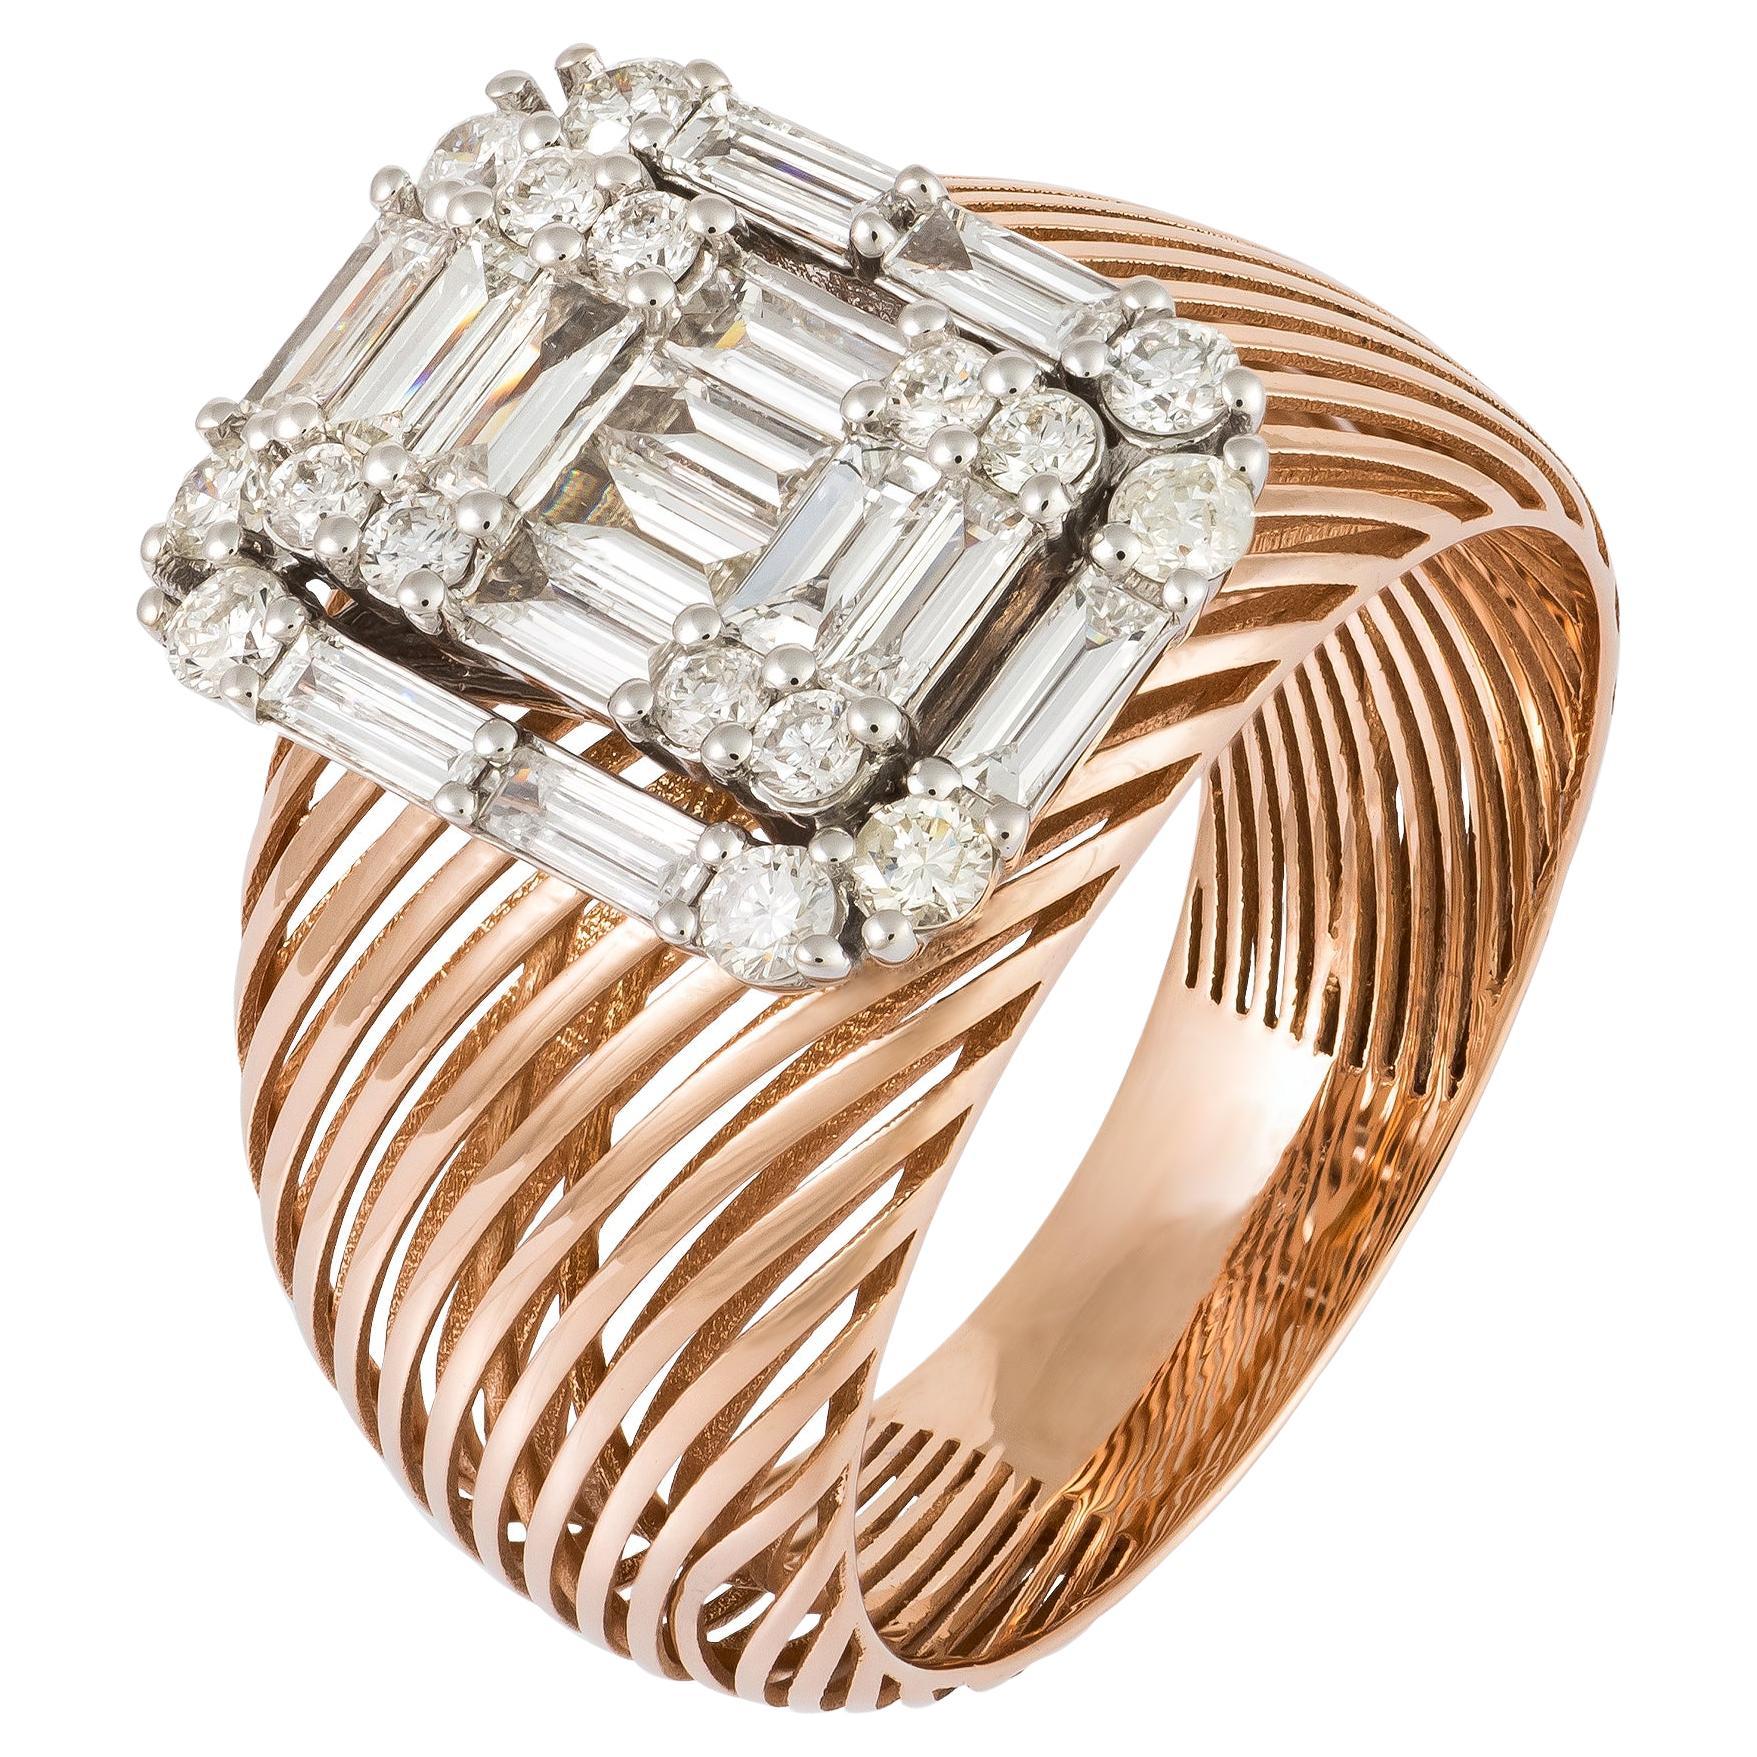 Monumental White Pink 18K Gold White Diamond Ring For Her